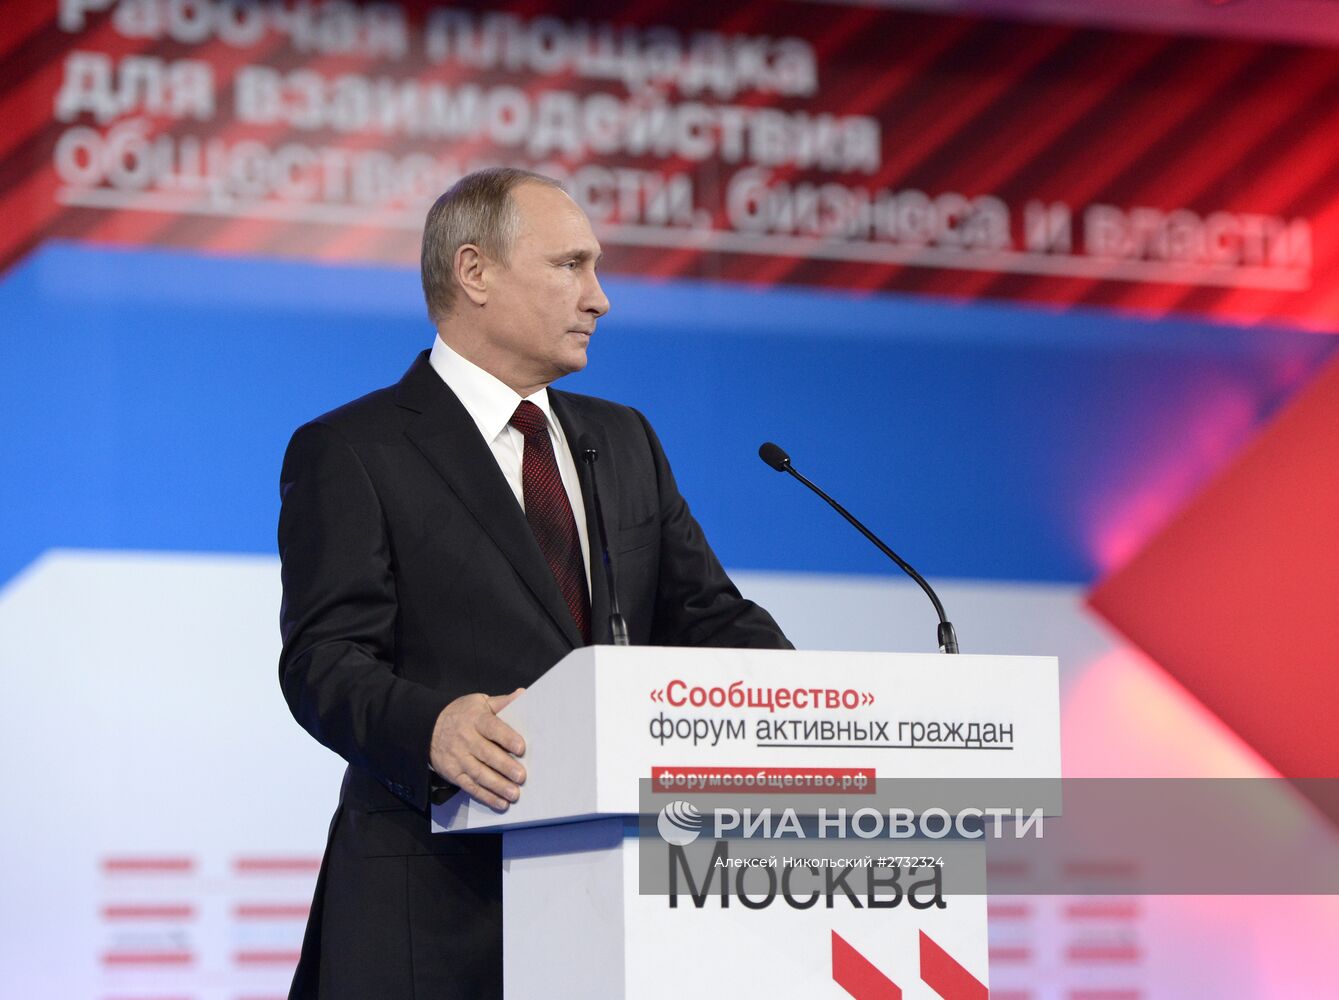 Президент РФ В.Путин выступил на форуме активных граждан "Сообщество"